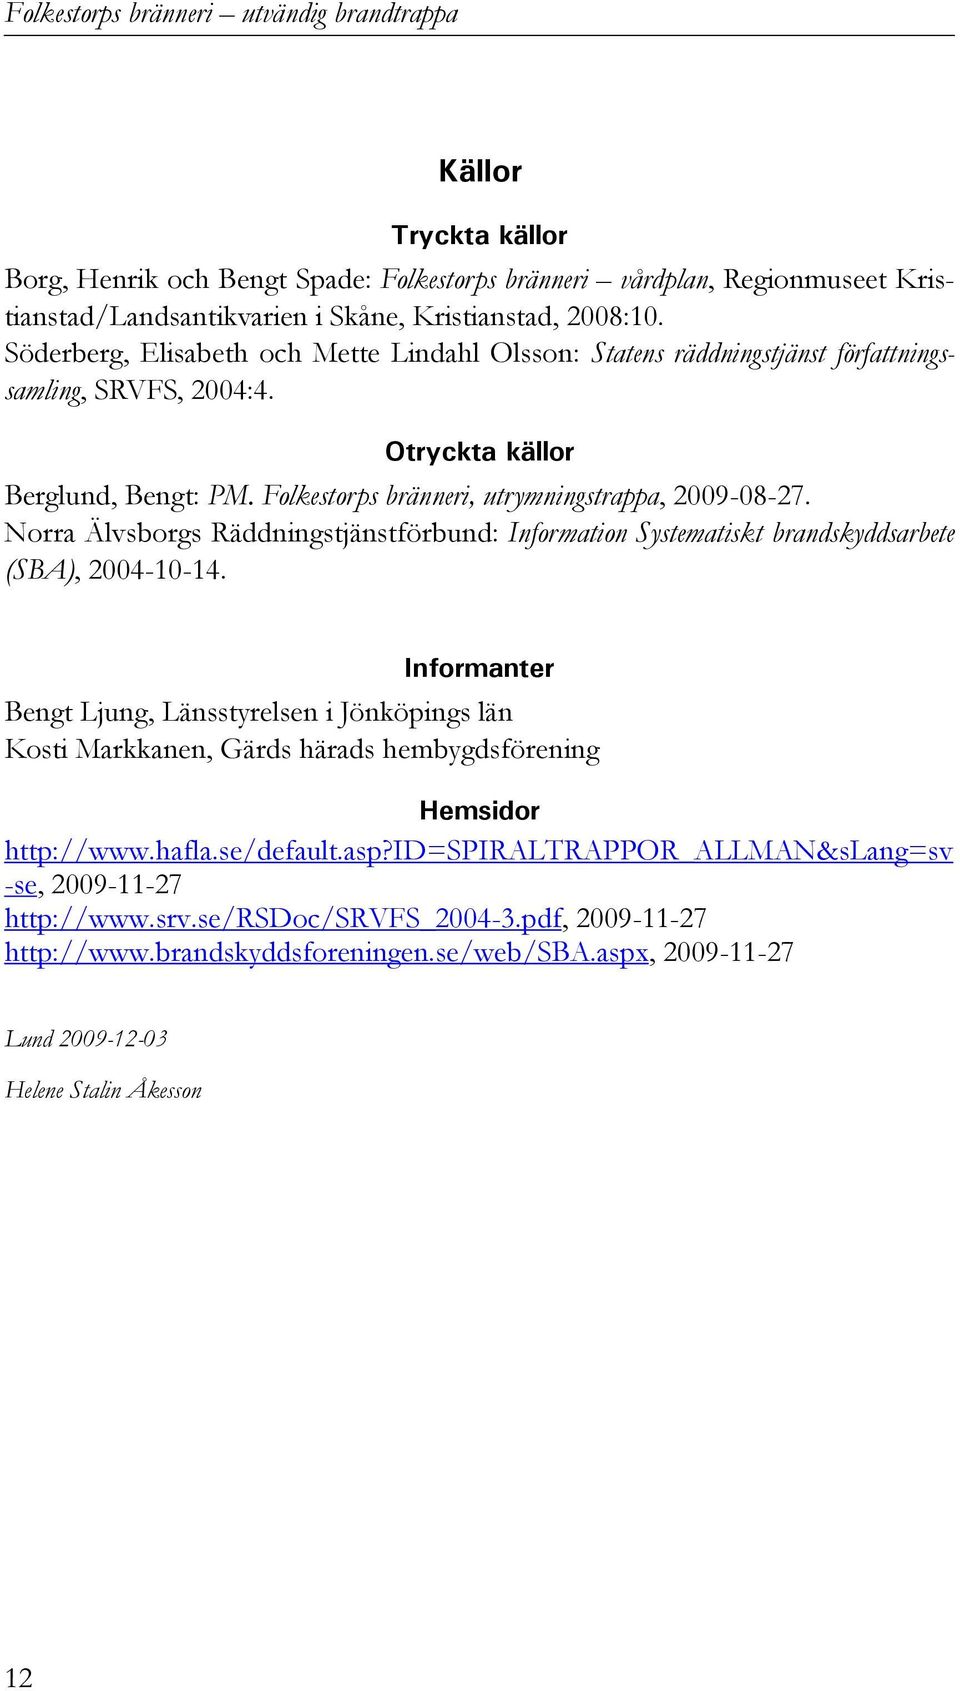 Norra Älvsborgs Räddningstjänstförbund: Information Systematiskt brandskyddsarbete (SBA), 2004-10-14.